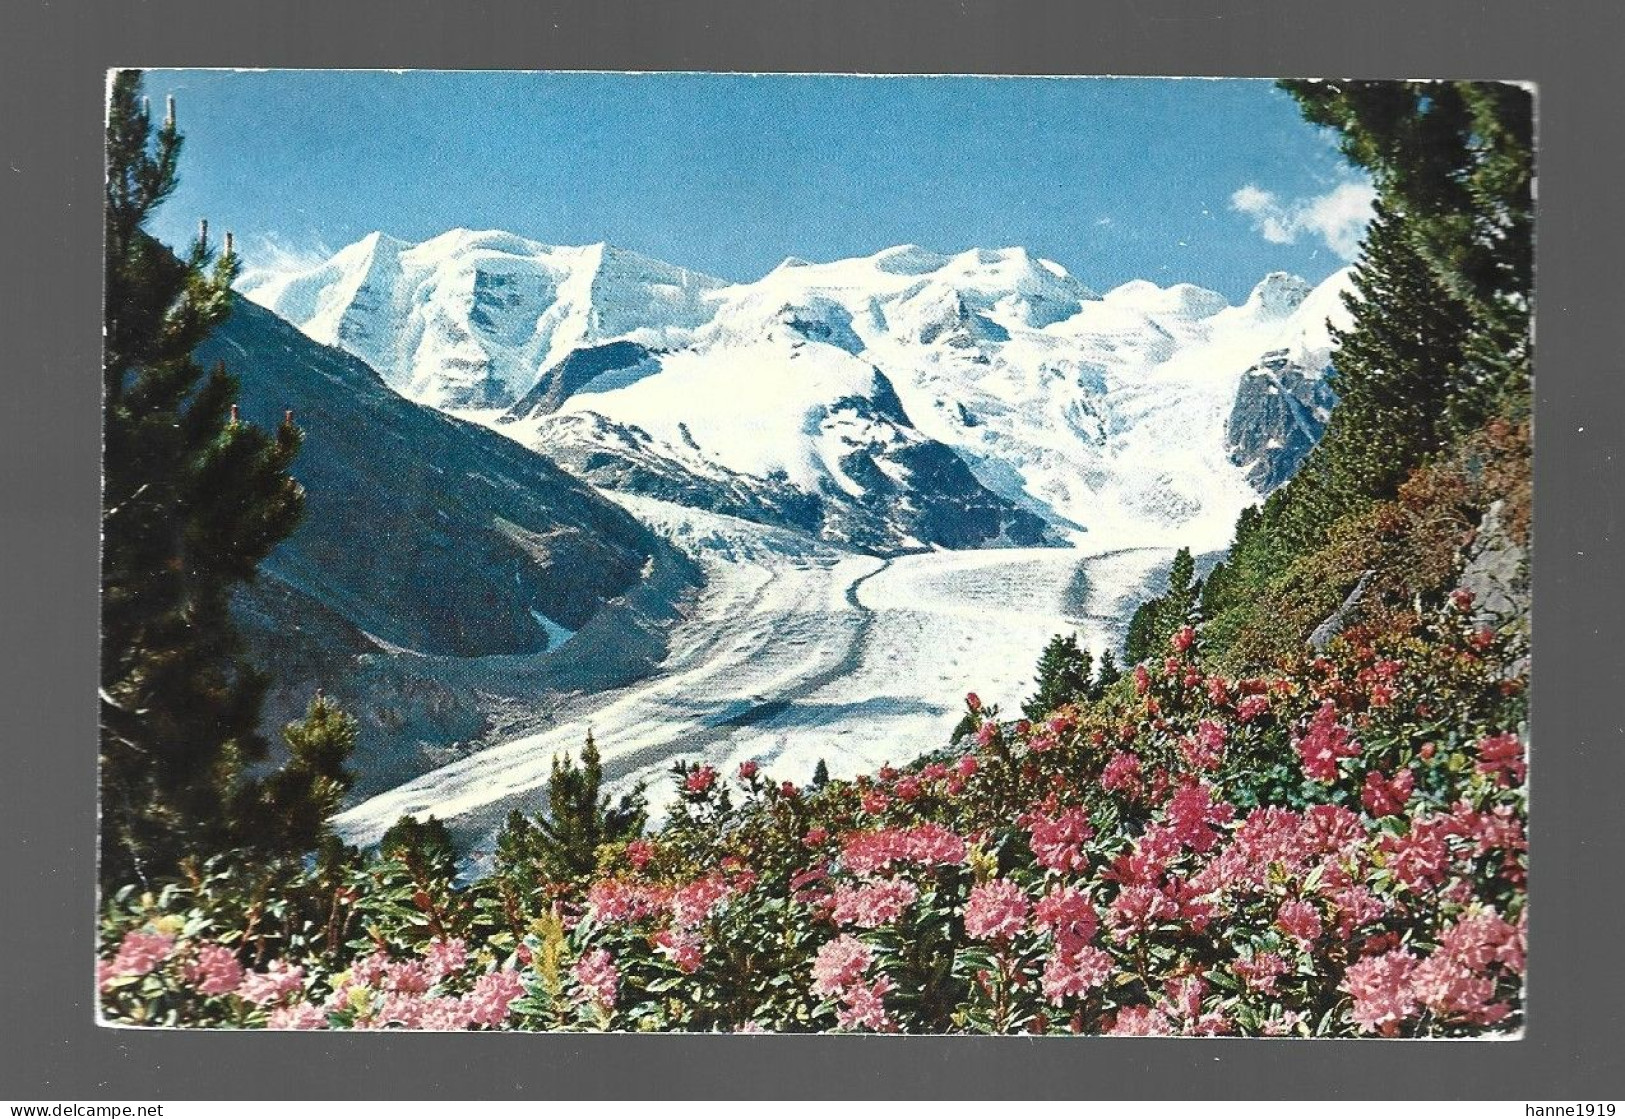 Alpenrosenfeld Am Morteratschgletscher Mit Piz Palu Und Bellavista Photo Carte Suisse Schweiz Htje - Pontresina